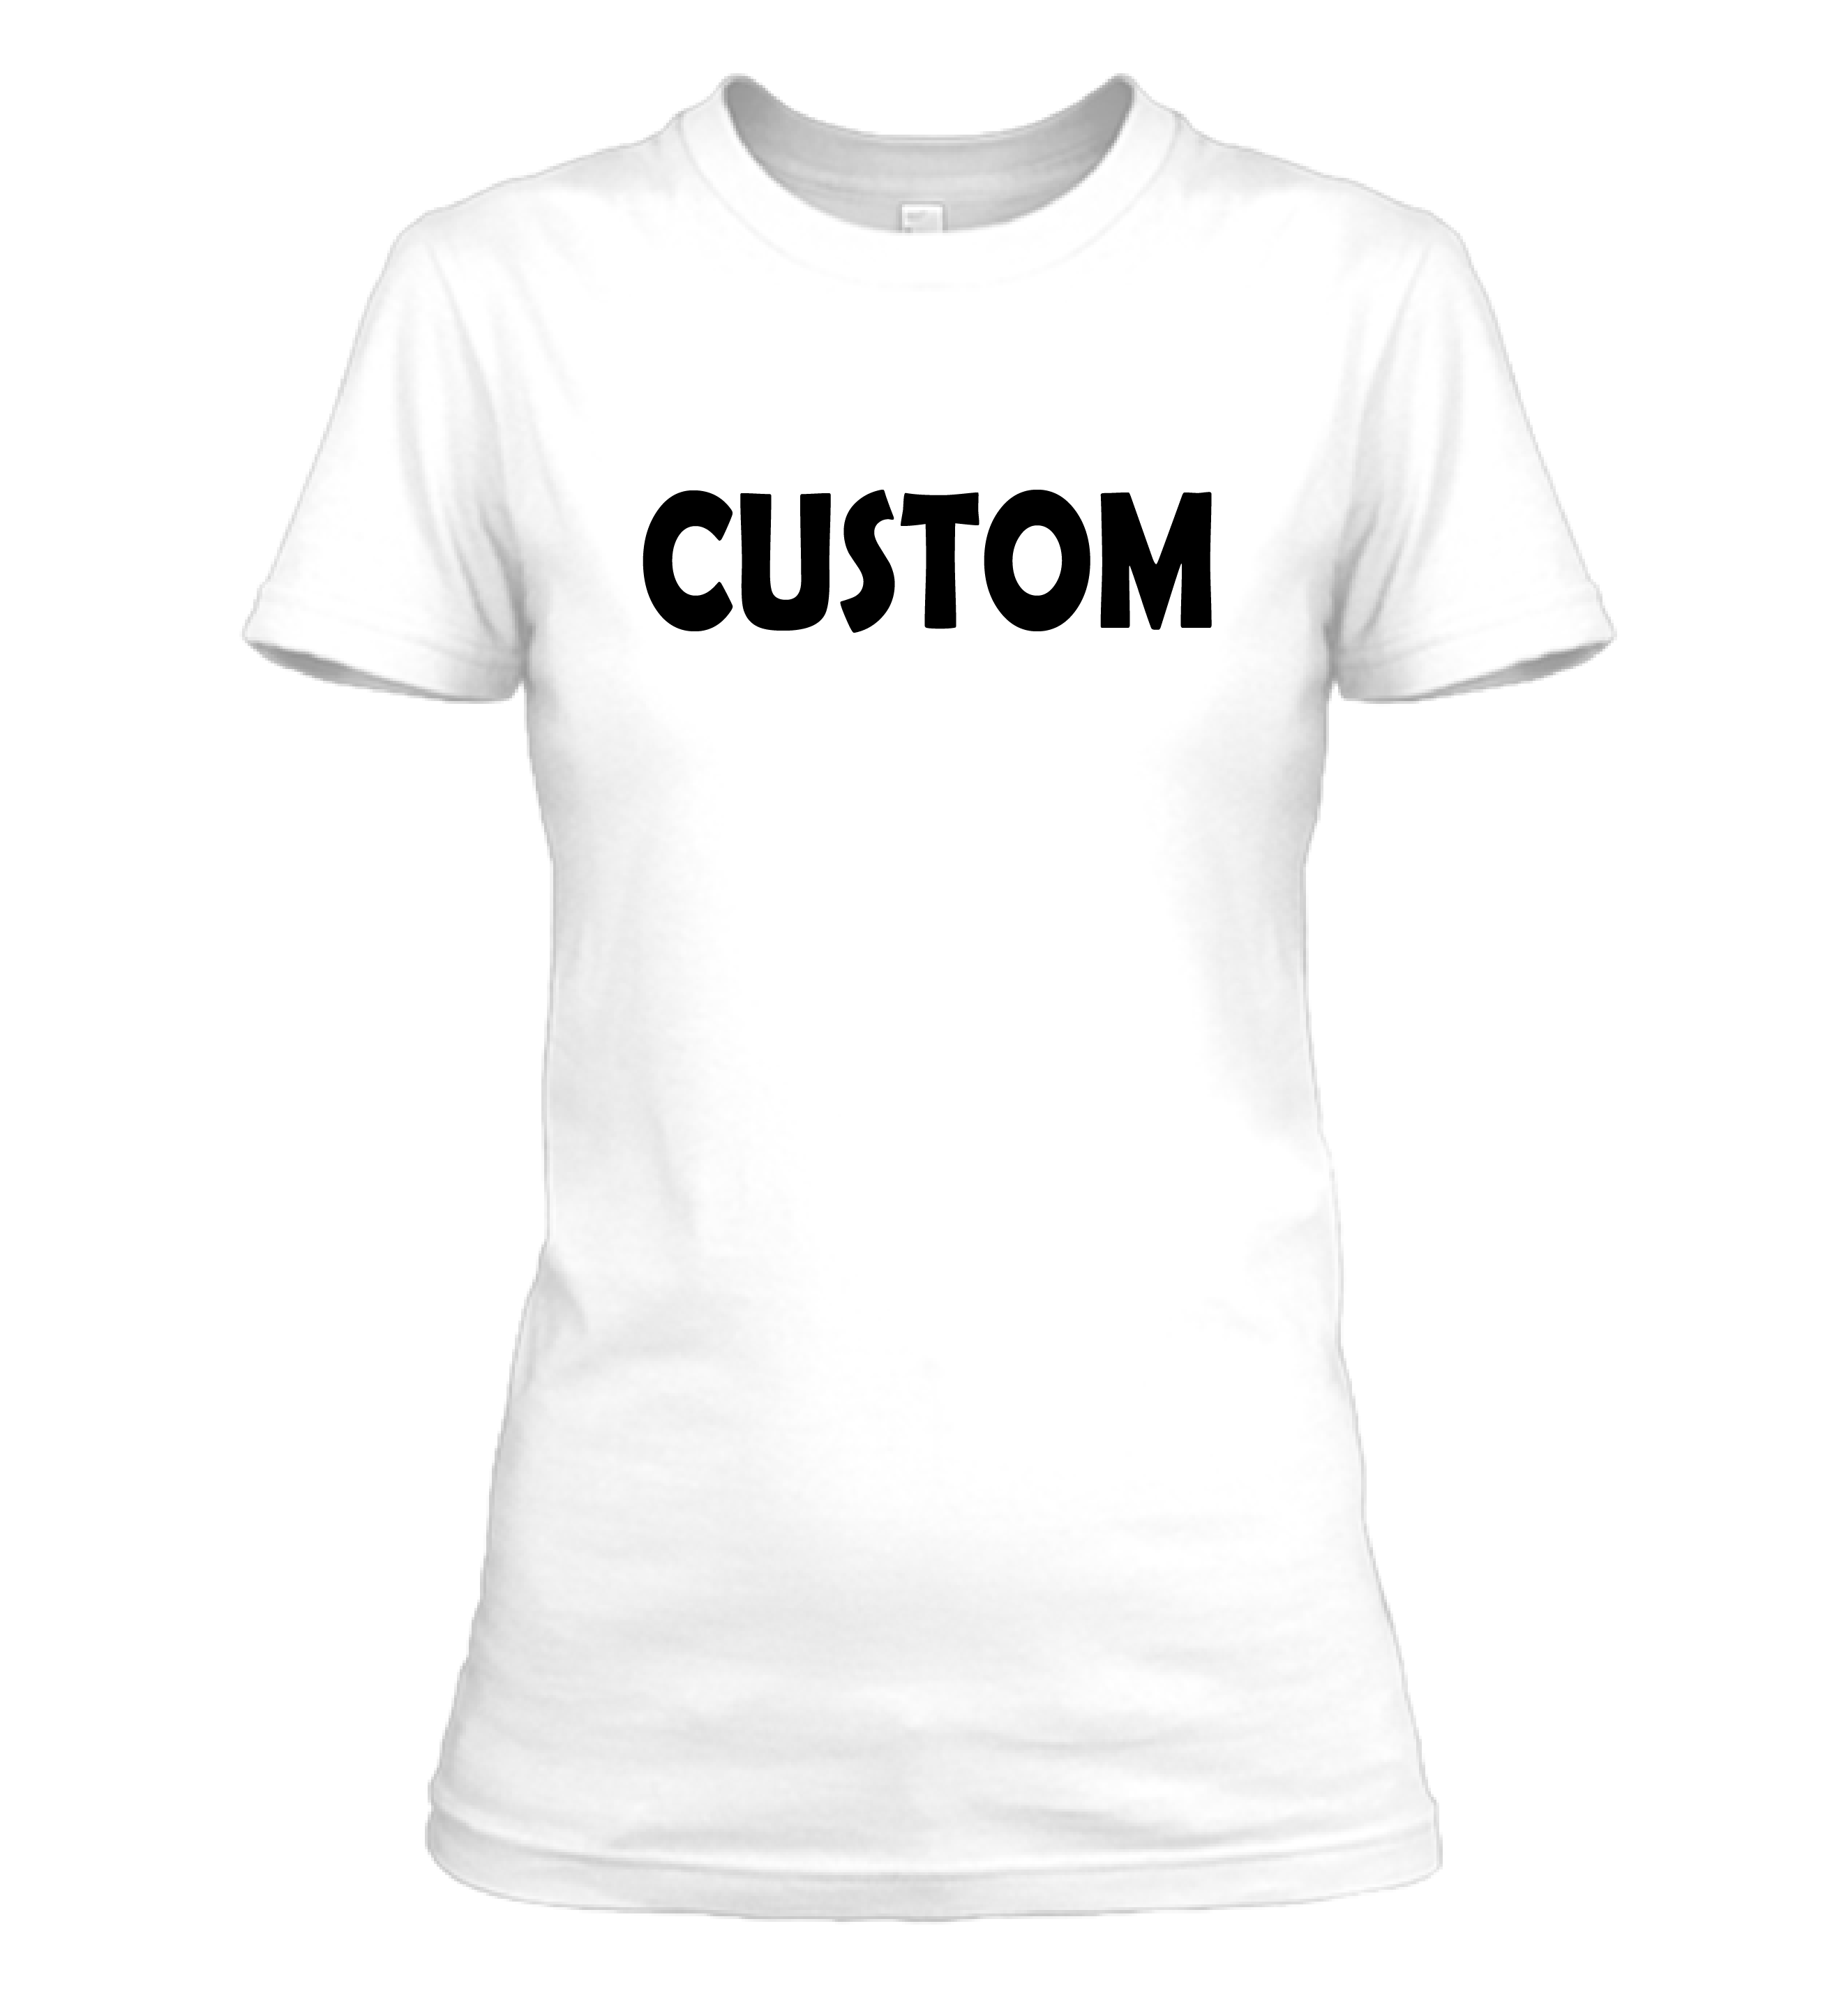 Custom Youth/Toddler Shirt For Seller